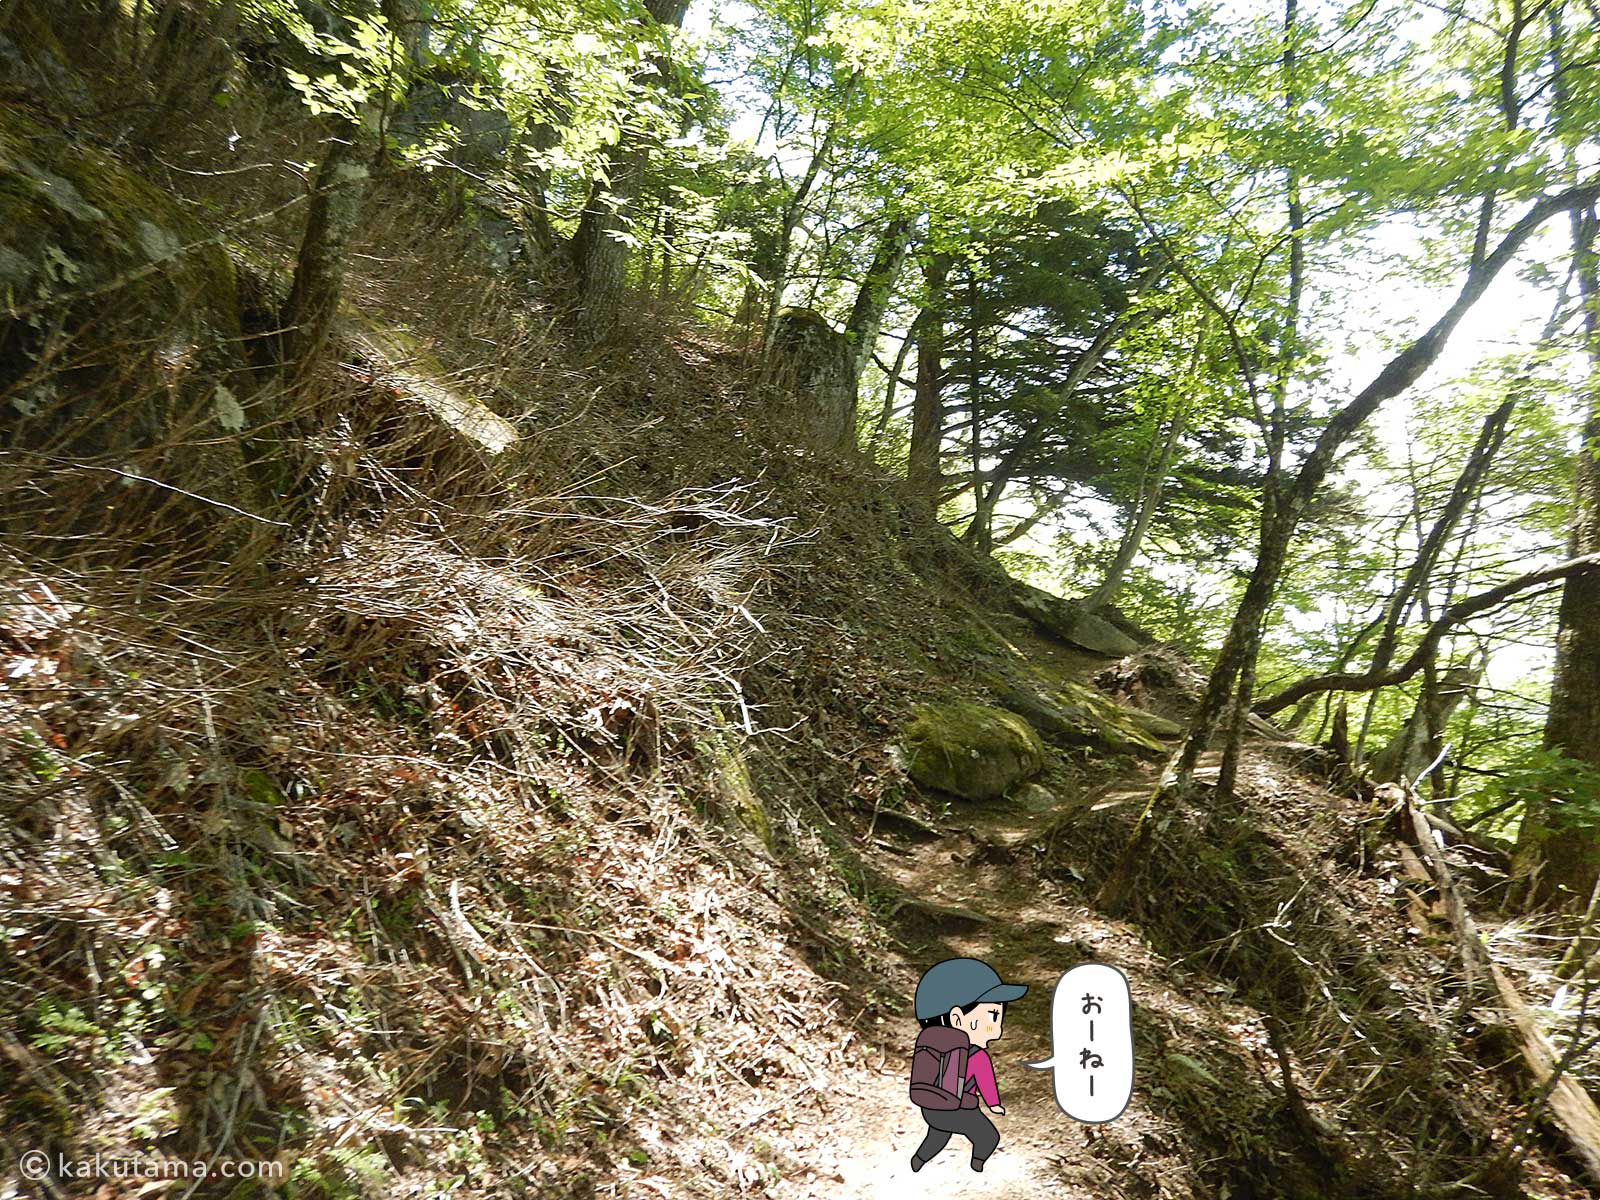 丸川荘へ向かって登る登山者のイラスト8